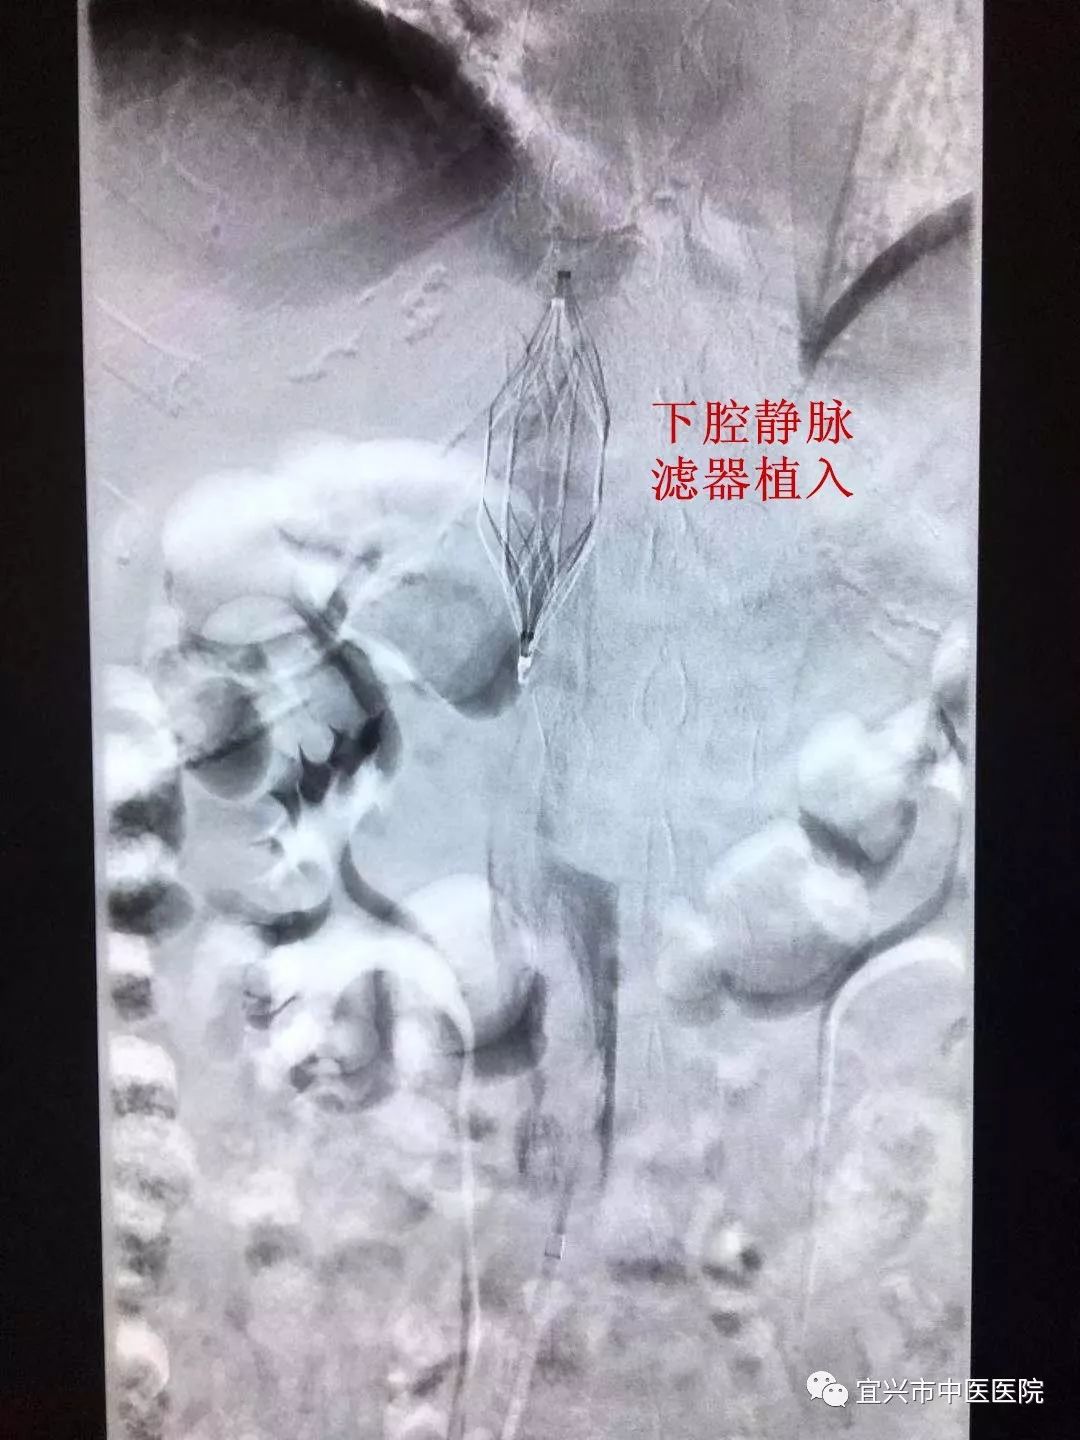 下腔静脉滤器超声图片